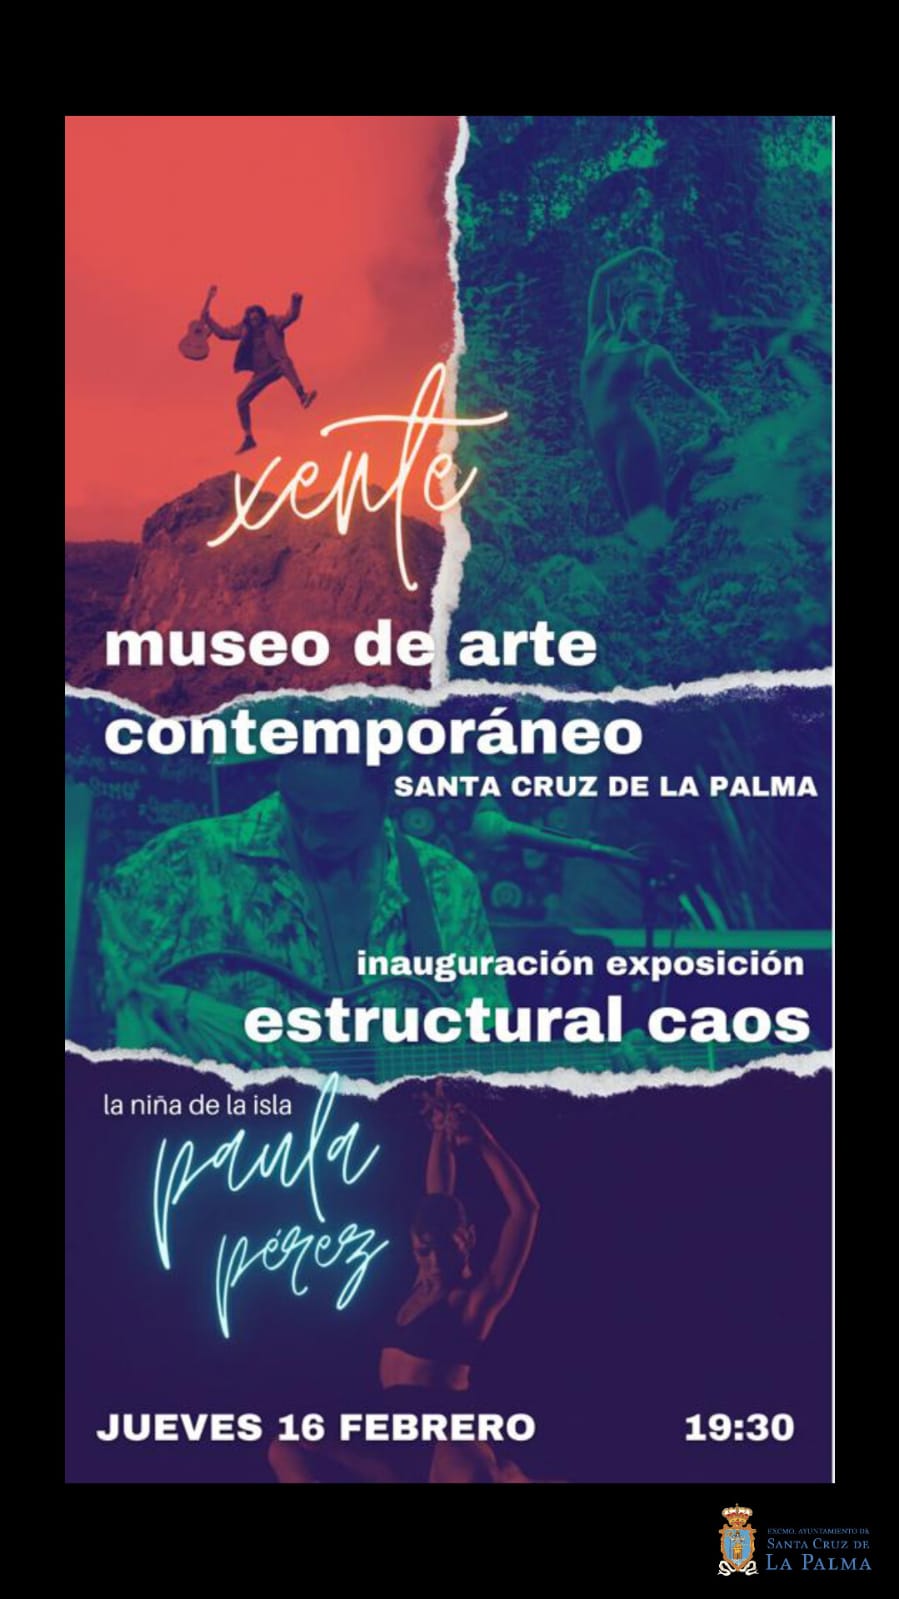 La concejalía de Cultura de Santa Cruz de La Palma inaugura este jueves la exposición del artista Xente